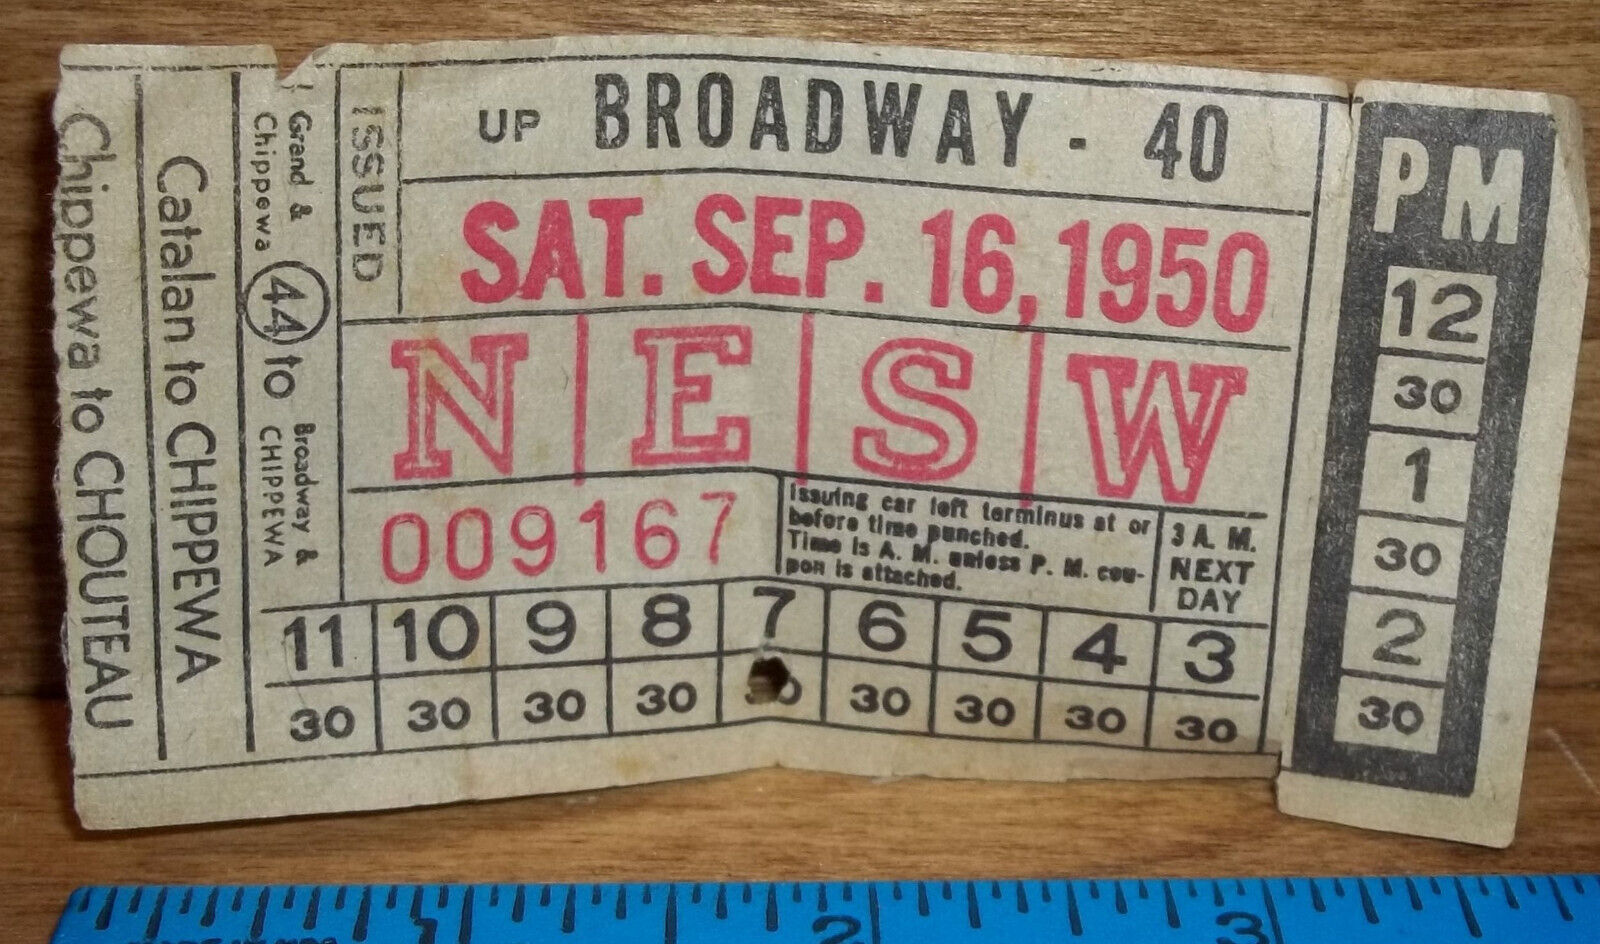 Up Broadway #40 Bus Transfer - St Louis Public Service - Sept 16, 1950.........e